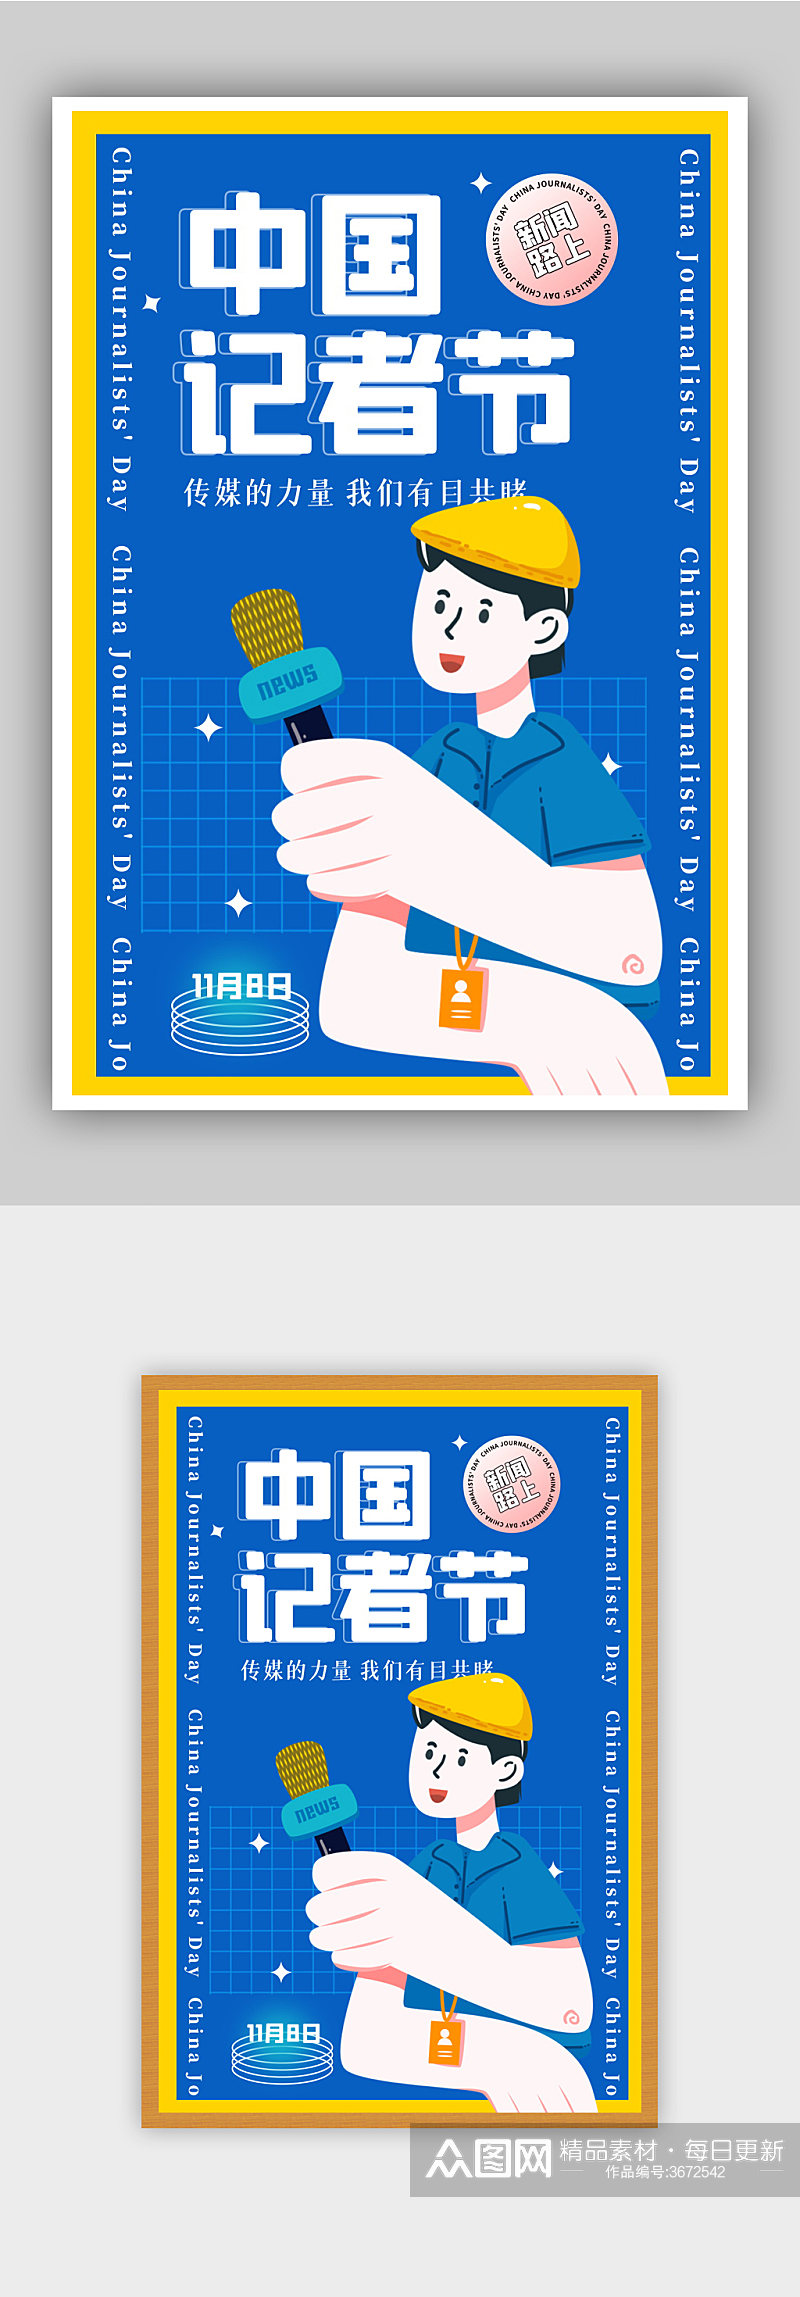 蓝色酸性中国记者节节日海报素材